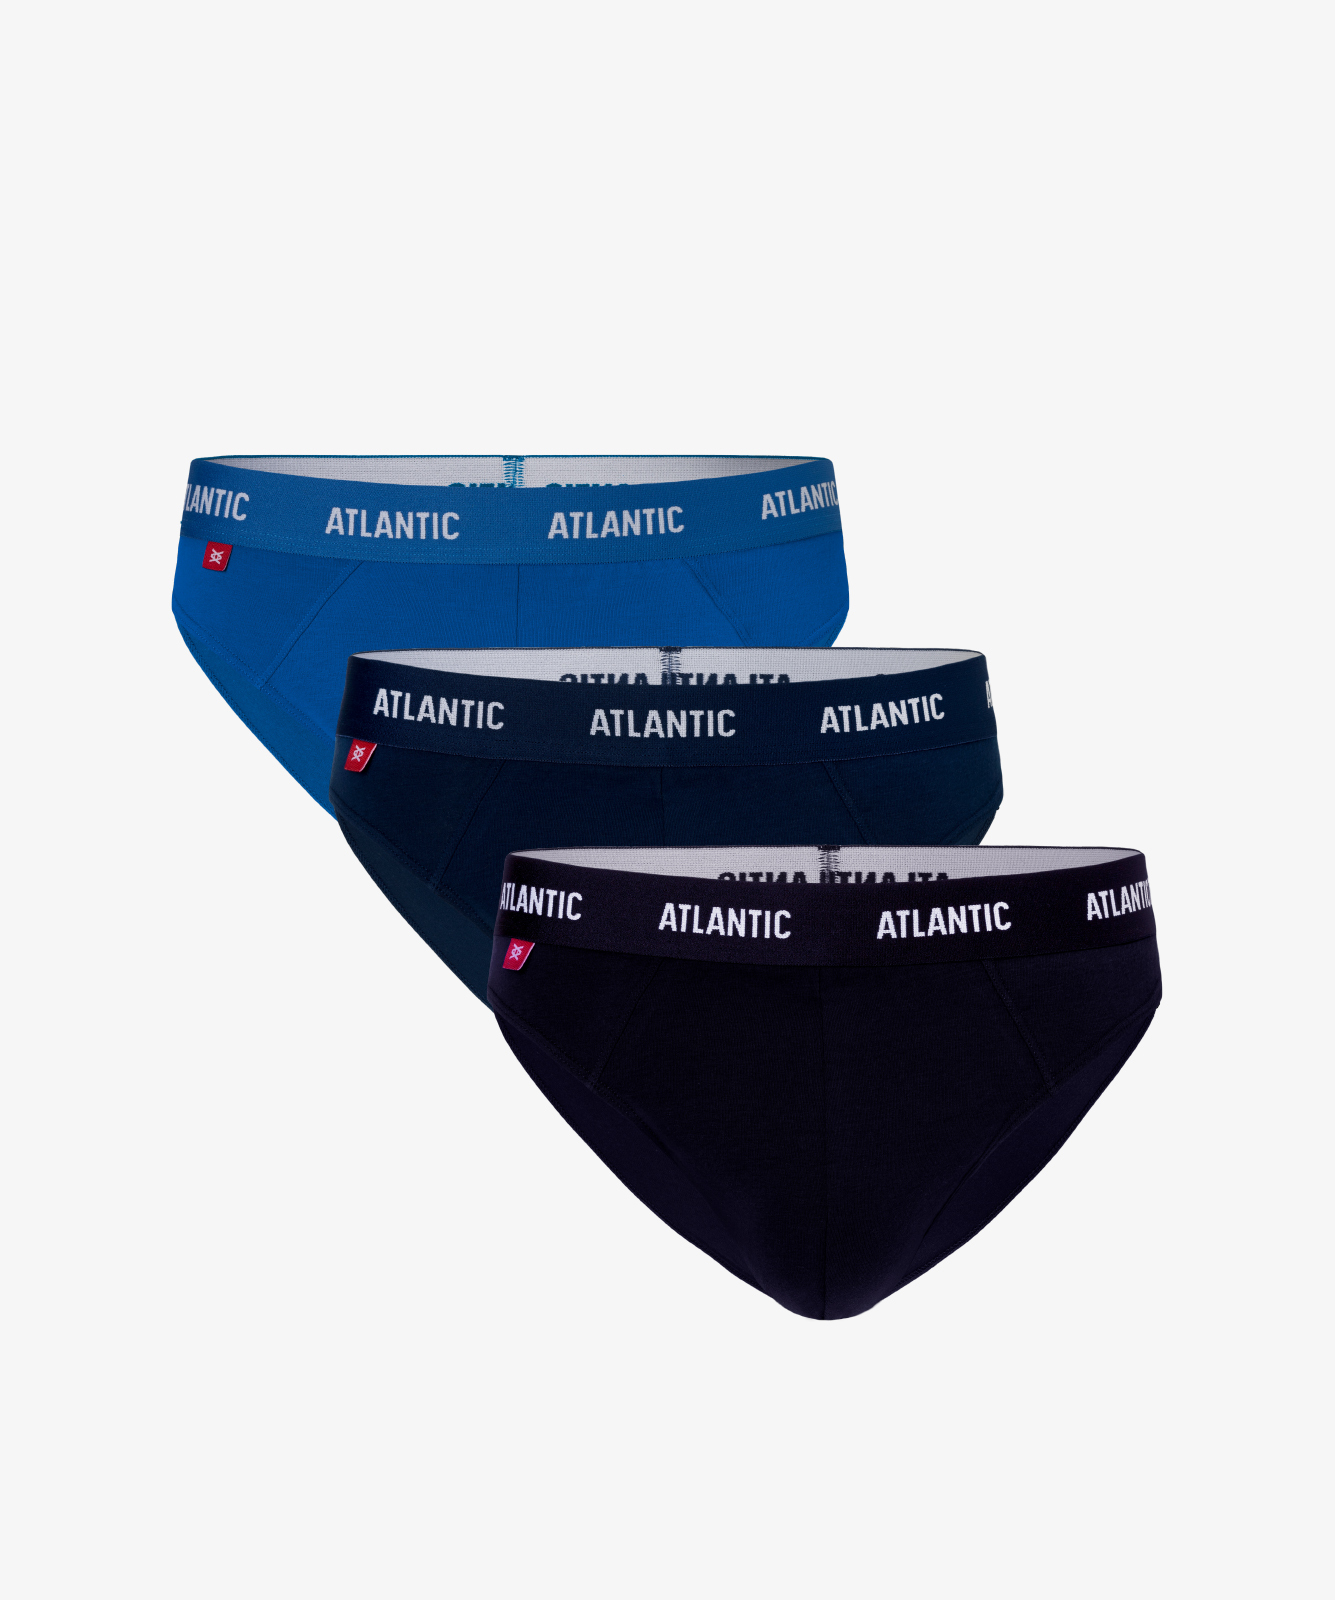 Мужские трусы слипы спорт Atlantic, набор 3 шт., хлопок, бирюзовые + темно-голубые + темно-синие, 3MP-128